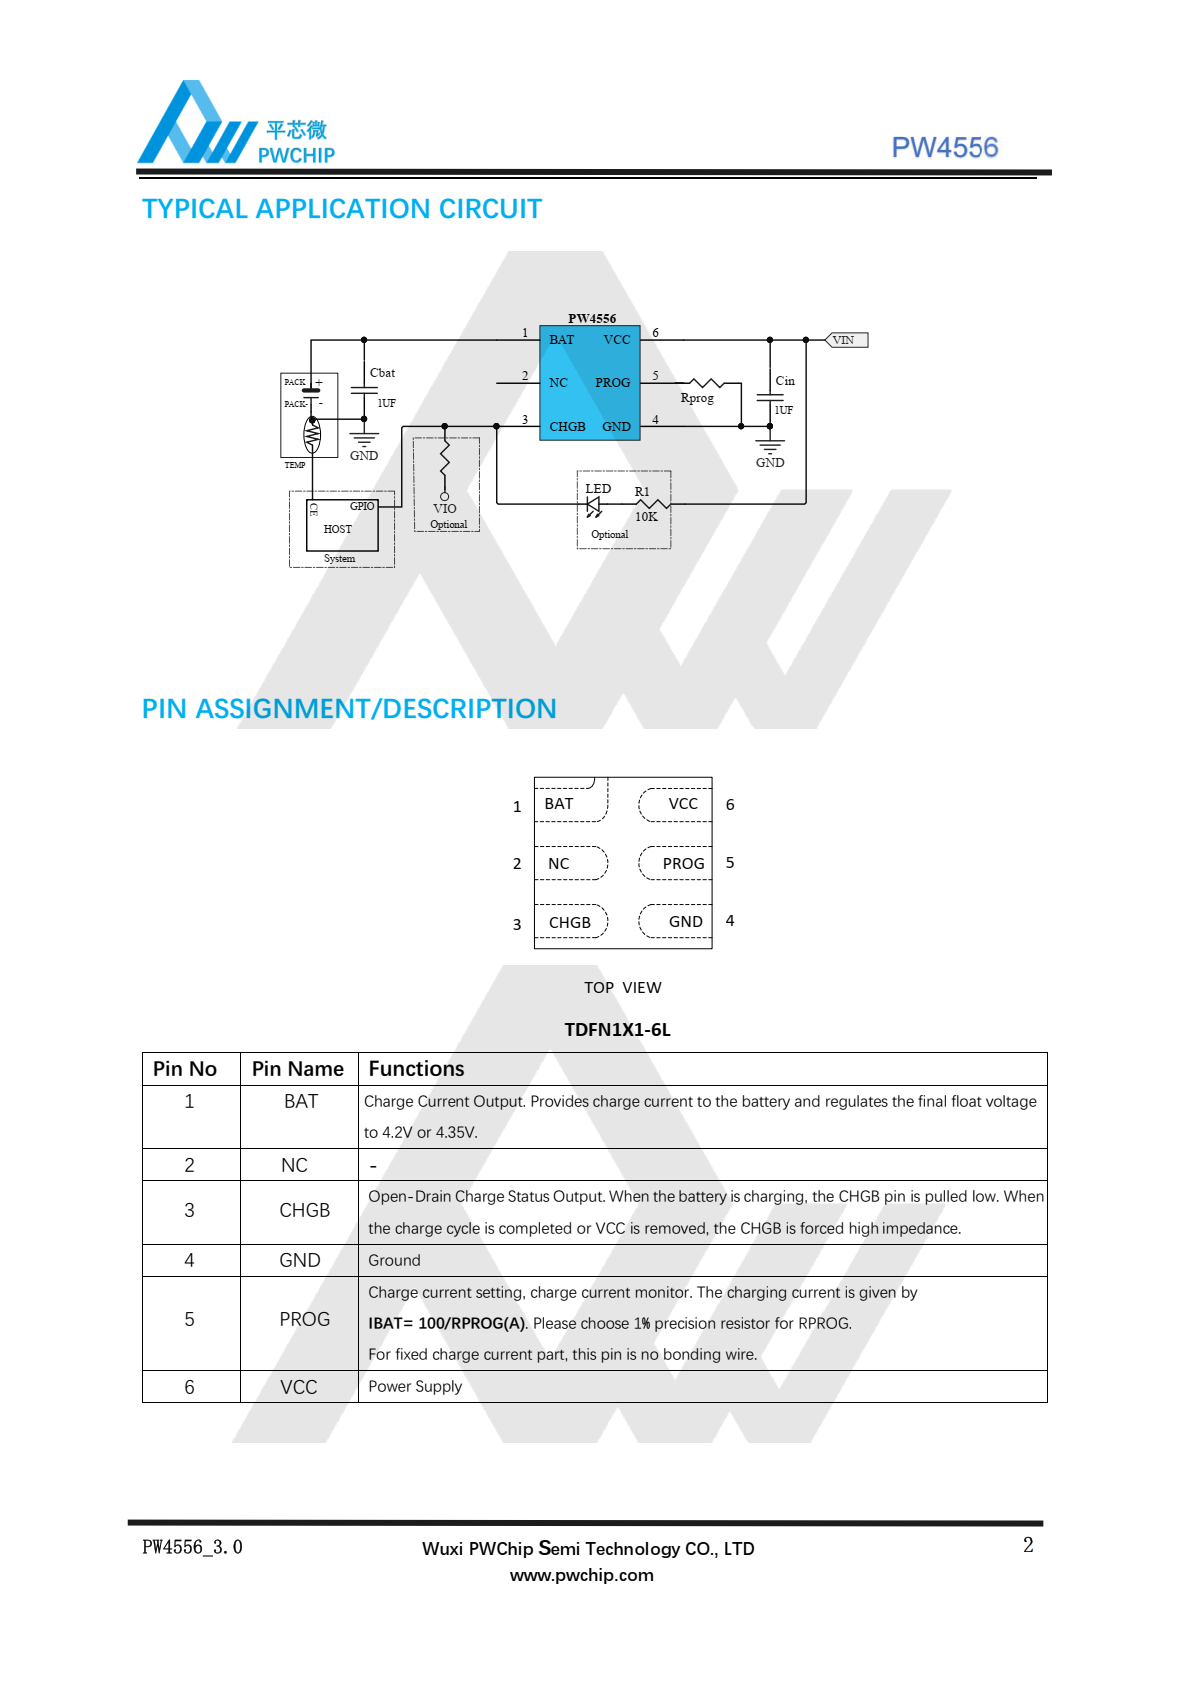 代理PW4556，高度集成的锂离子和锂极线性充电器  用于便携式应用的小容量电池。